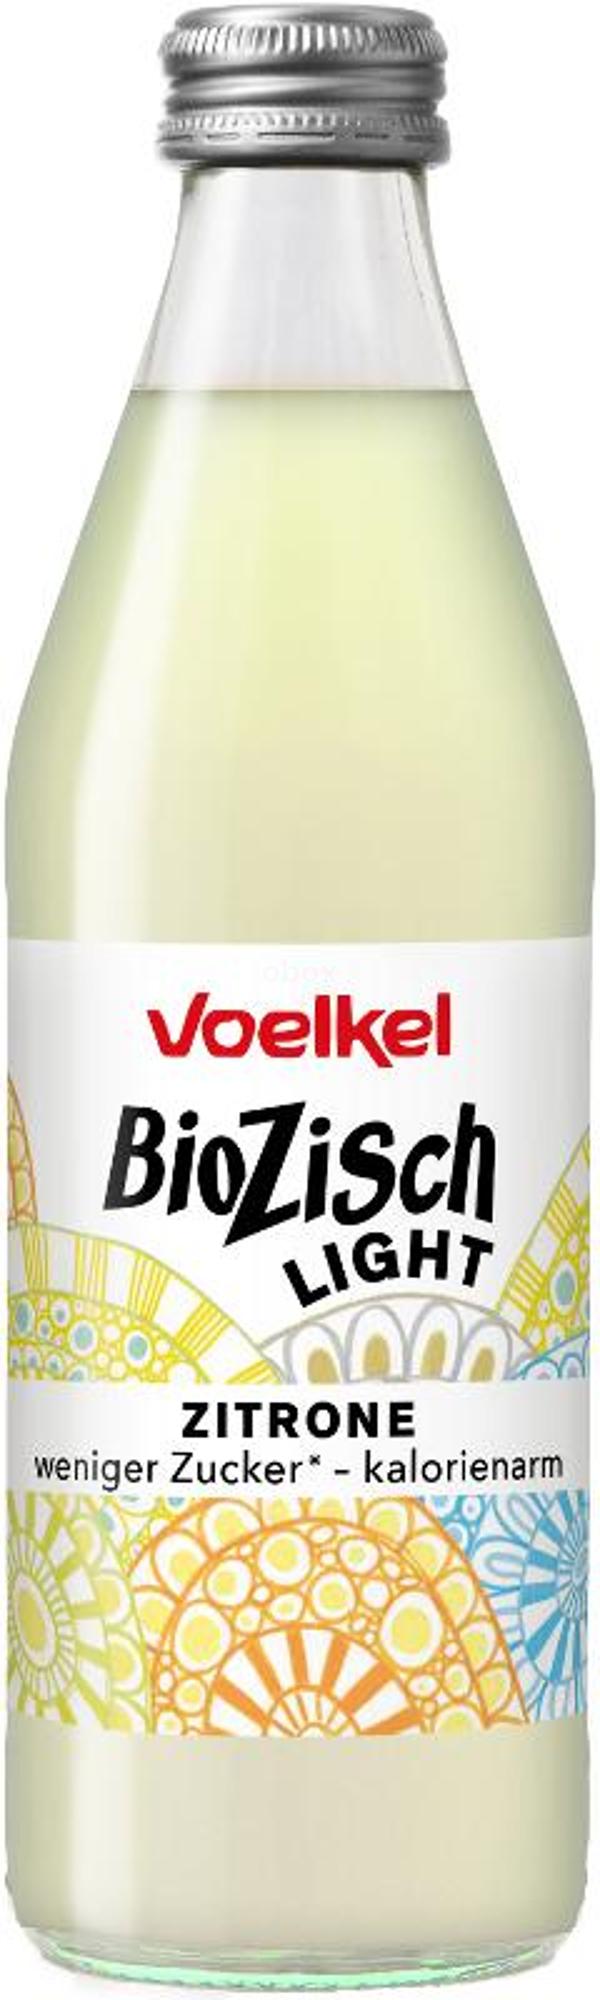 Produktfoto zu Voelkel BioZisch leicht Zitrone - 0,33l